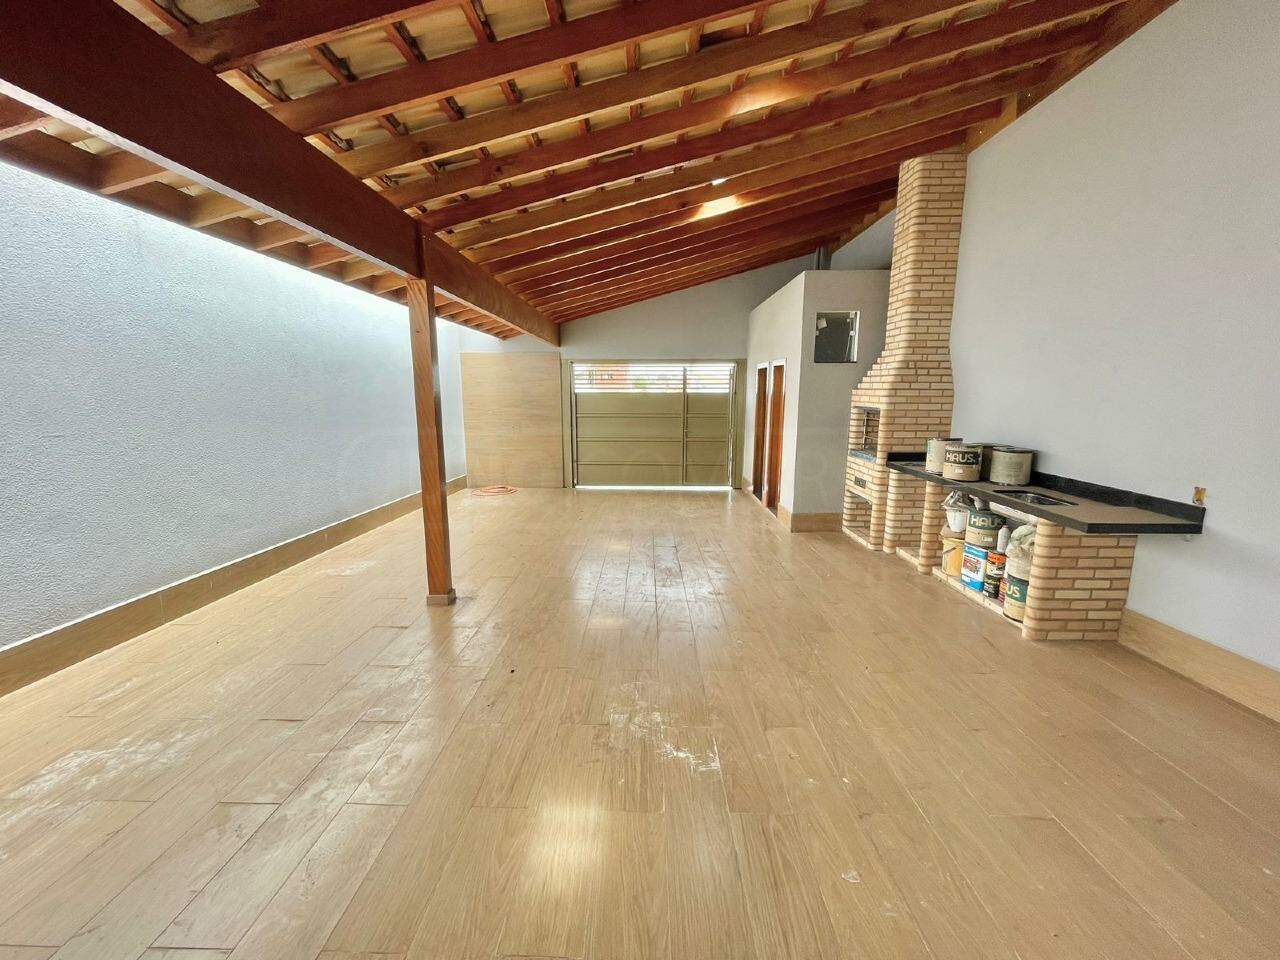 Casa à venda, 3 quartos, sendo 1 suíte, 4 vagas, no bairro Residencial Nova Água Branca II em Piracicaba - SP